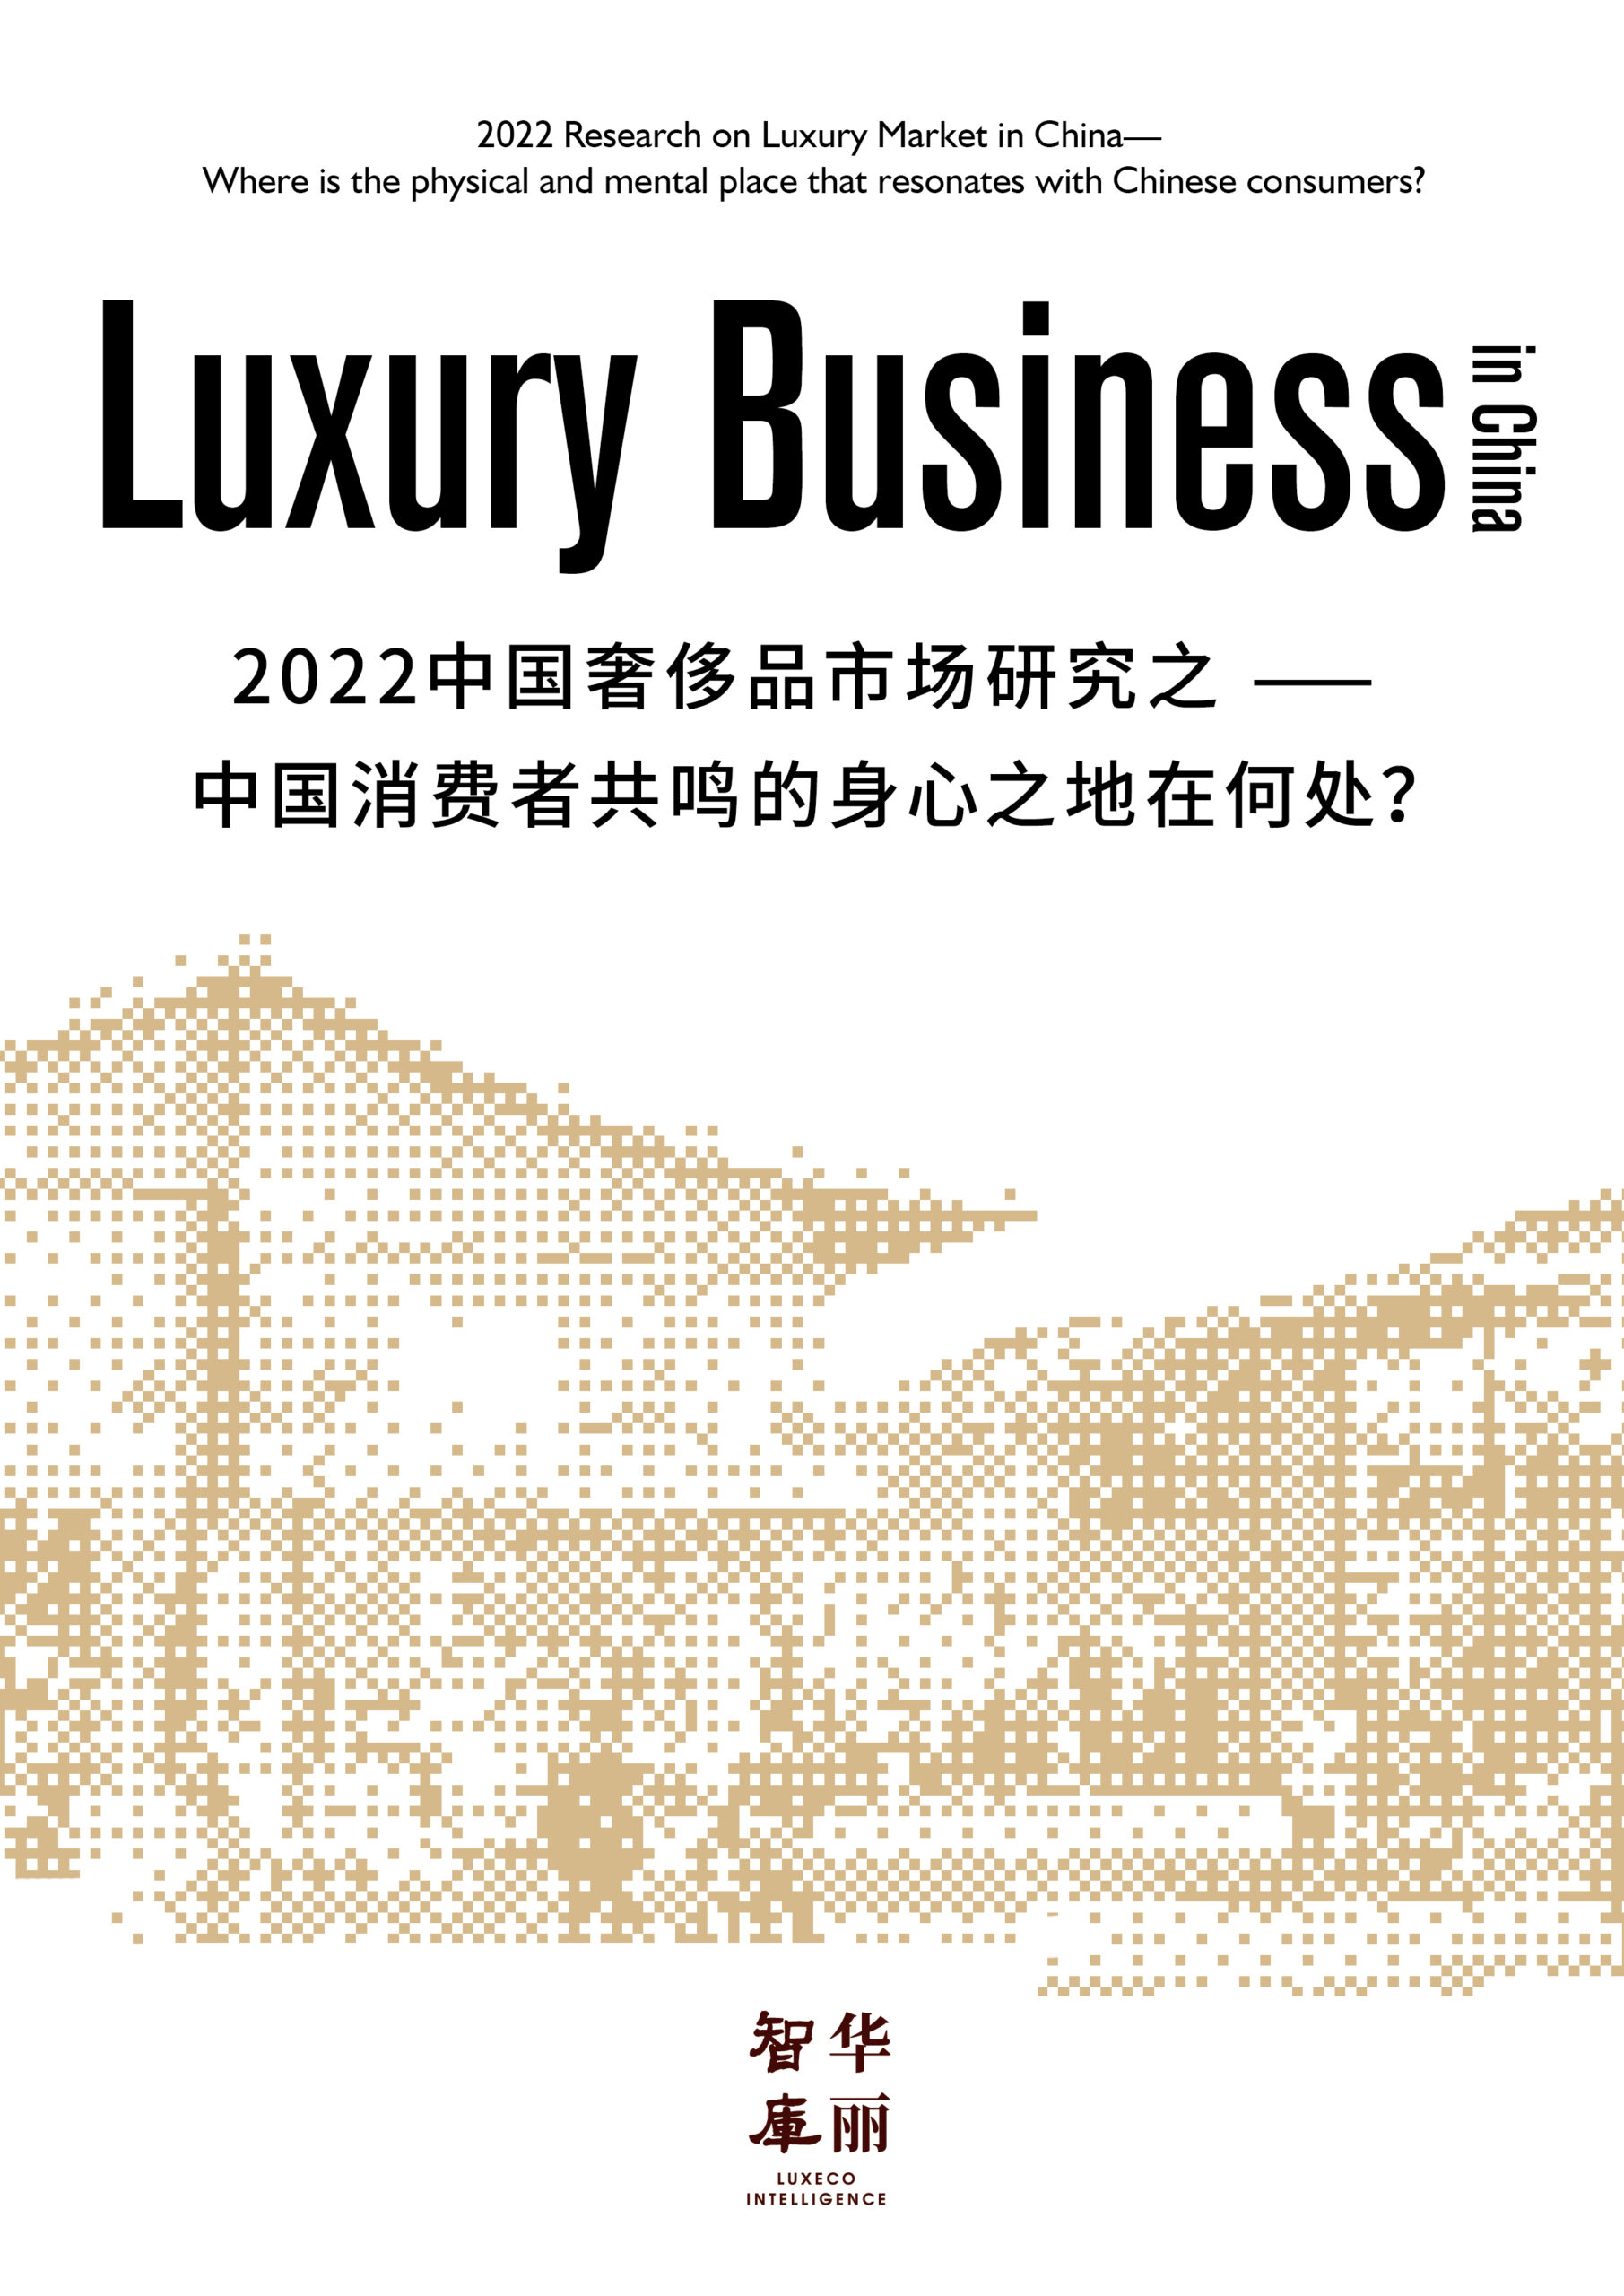 独家报告（免费下载）| 2022中国奢侈品市场研究：中国消费者共鸣的身心之地在何处？